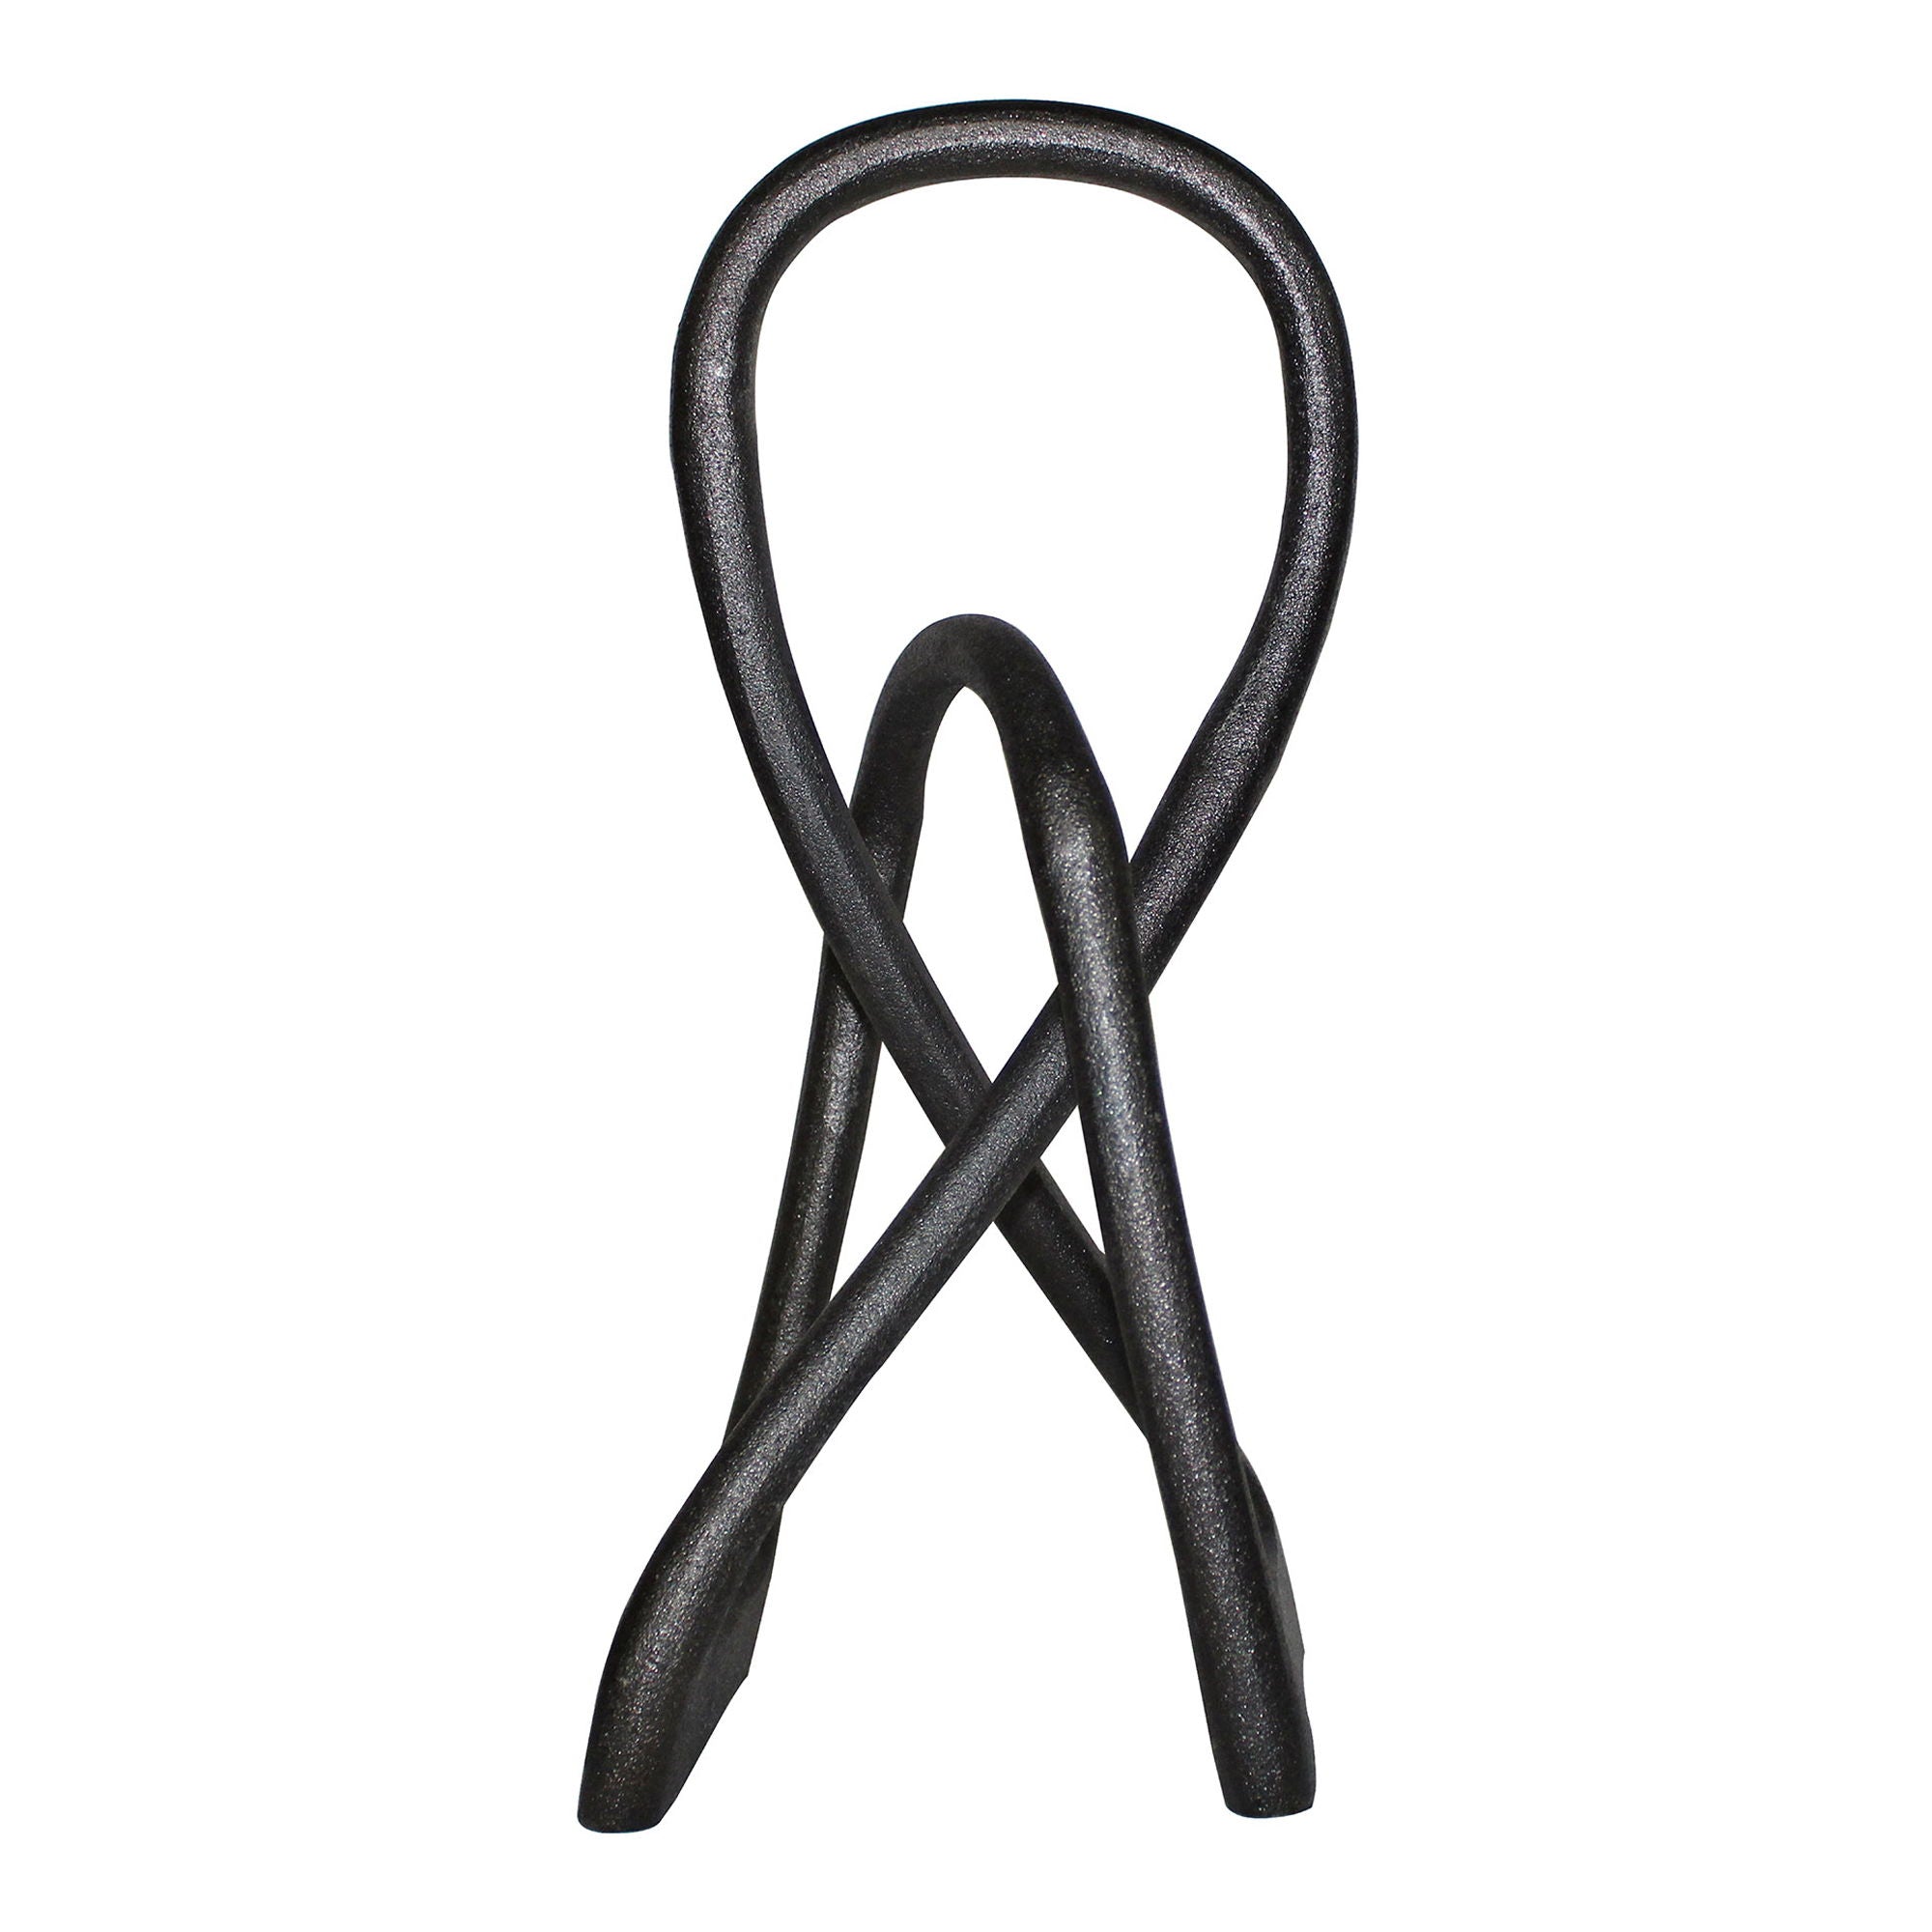 Knot - Tabletop Décor - Black